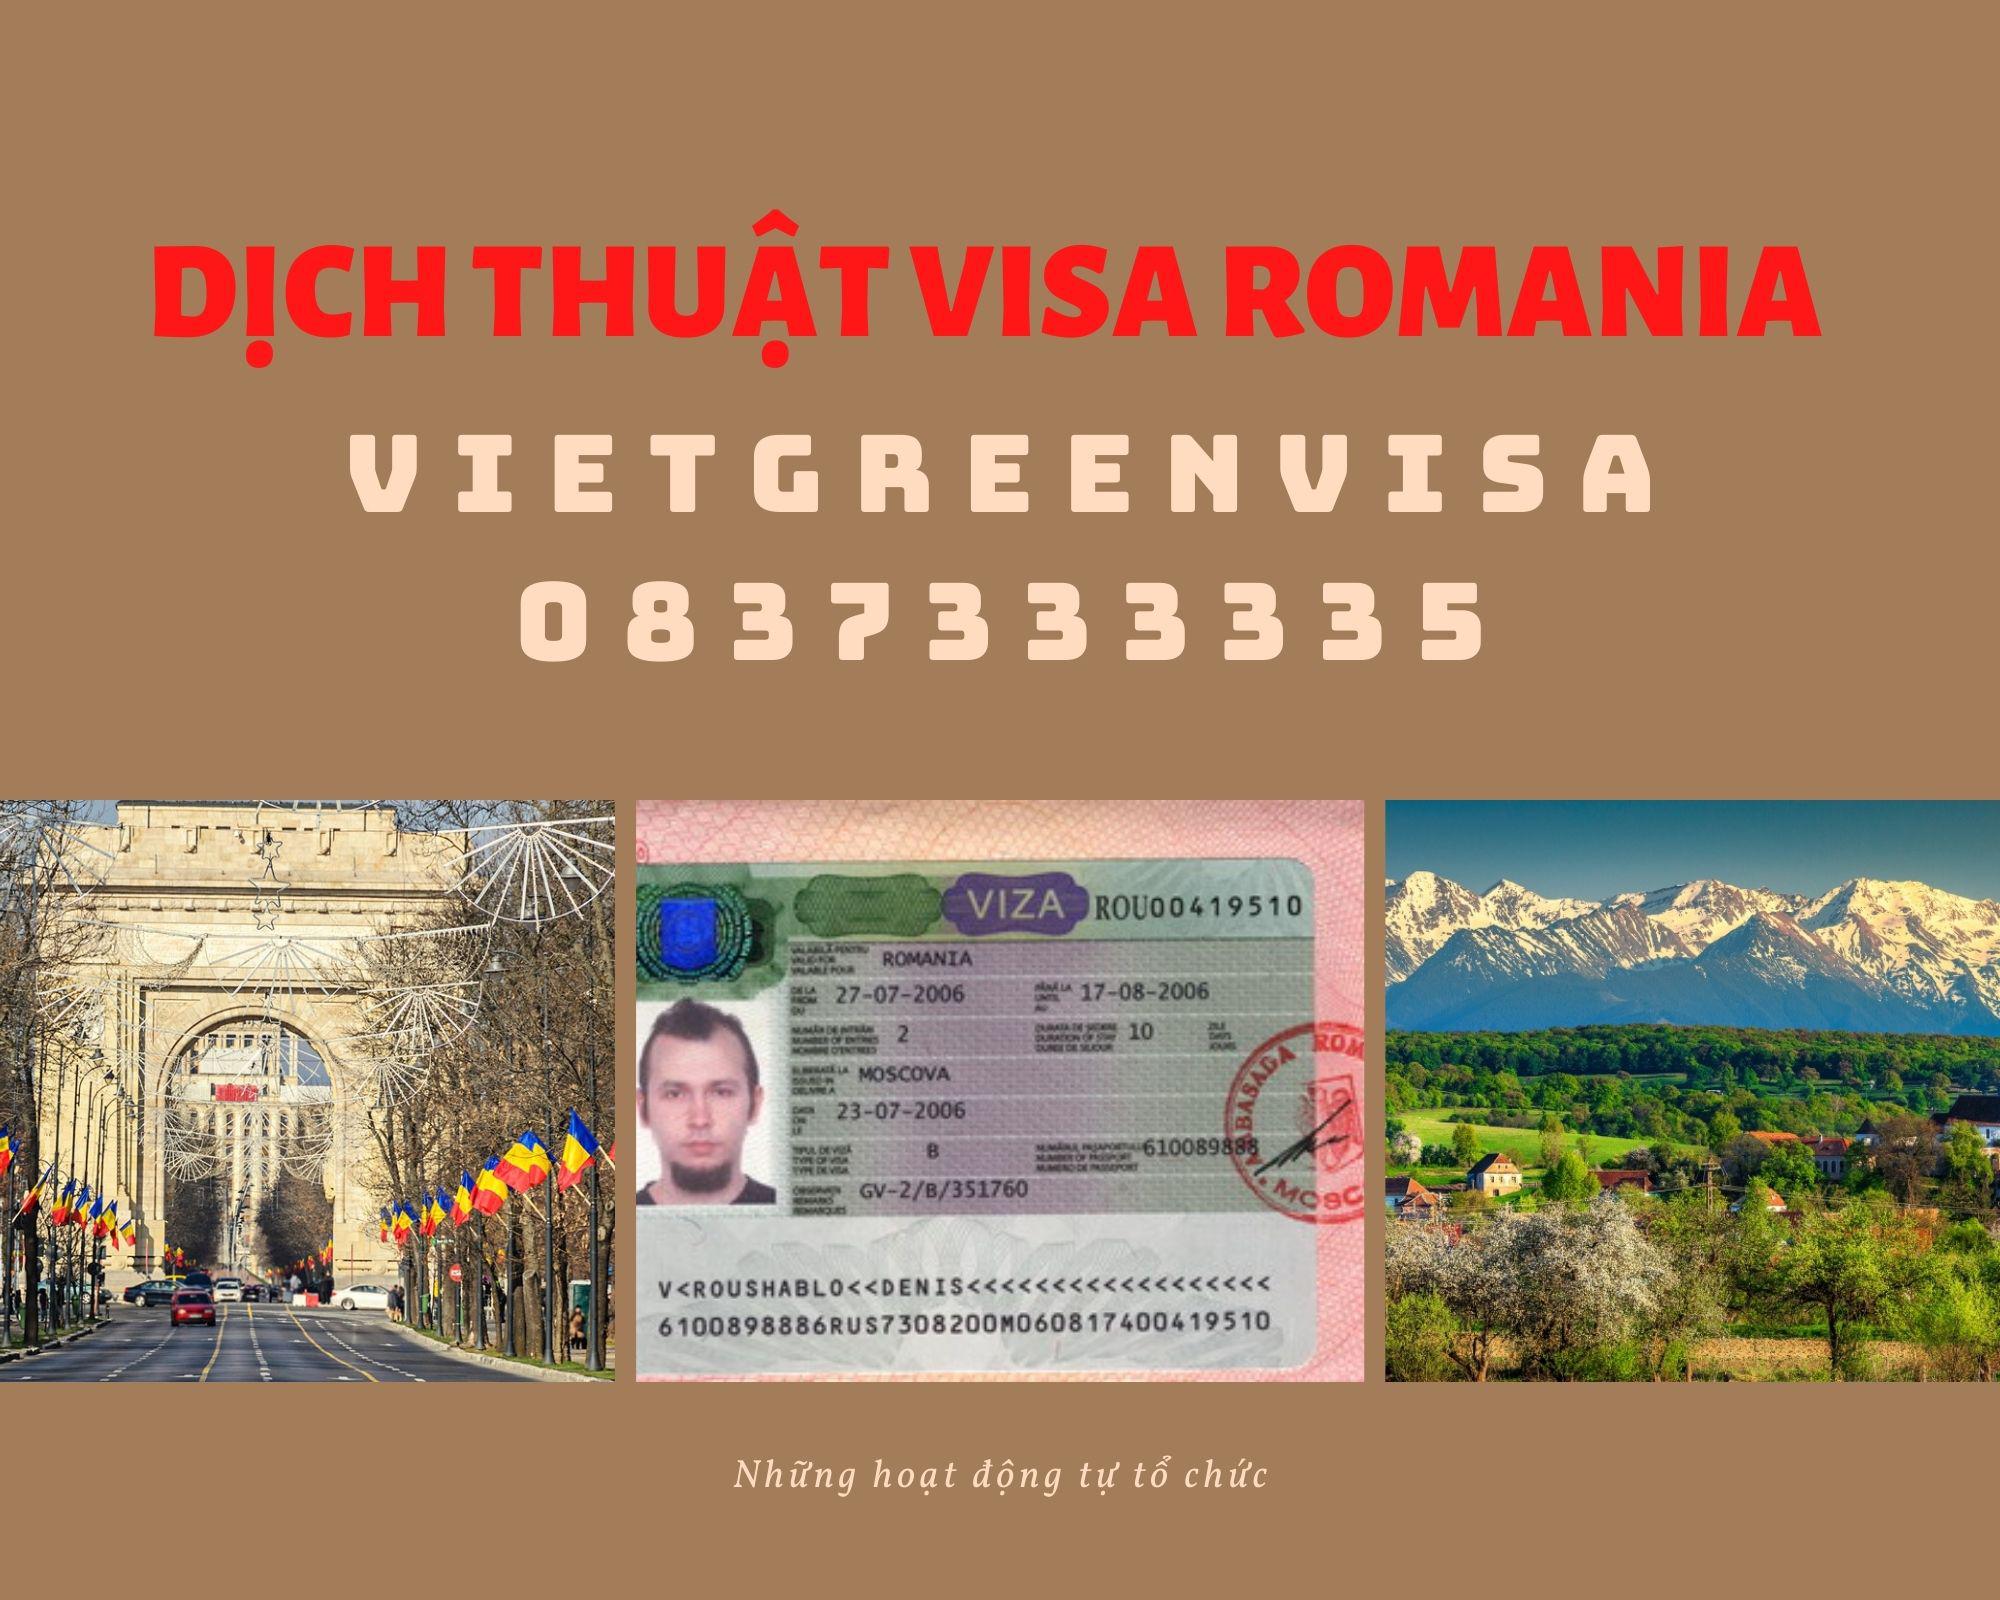 Tư vấn dịch thuật công chứng hồ sơ visa du lịch, du học Romania nhanh rẻ